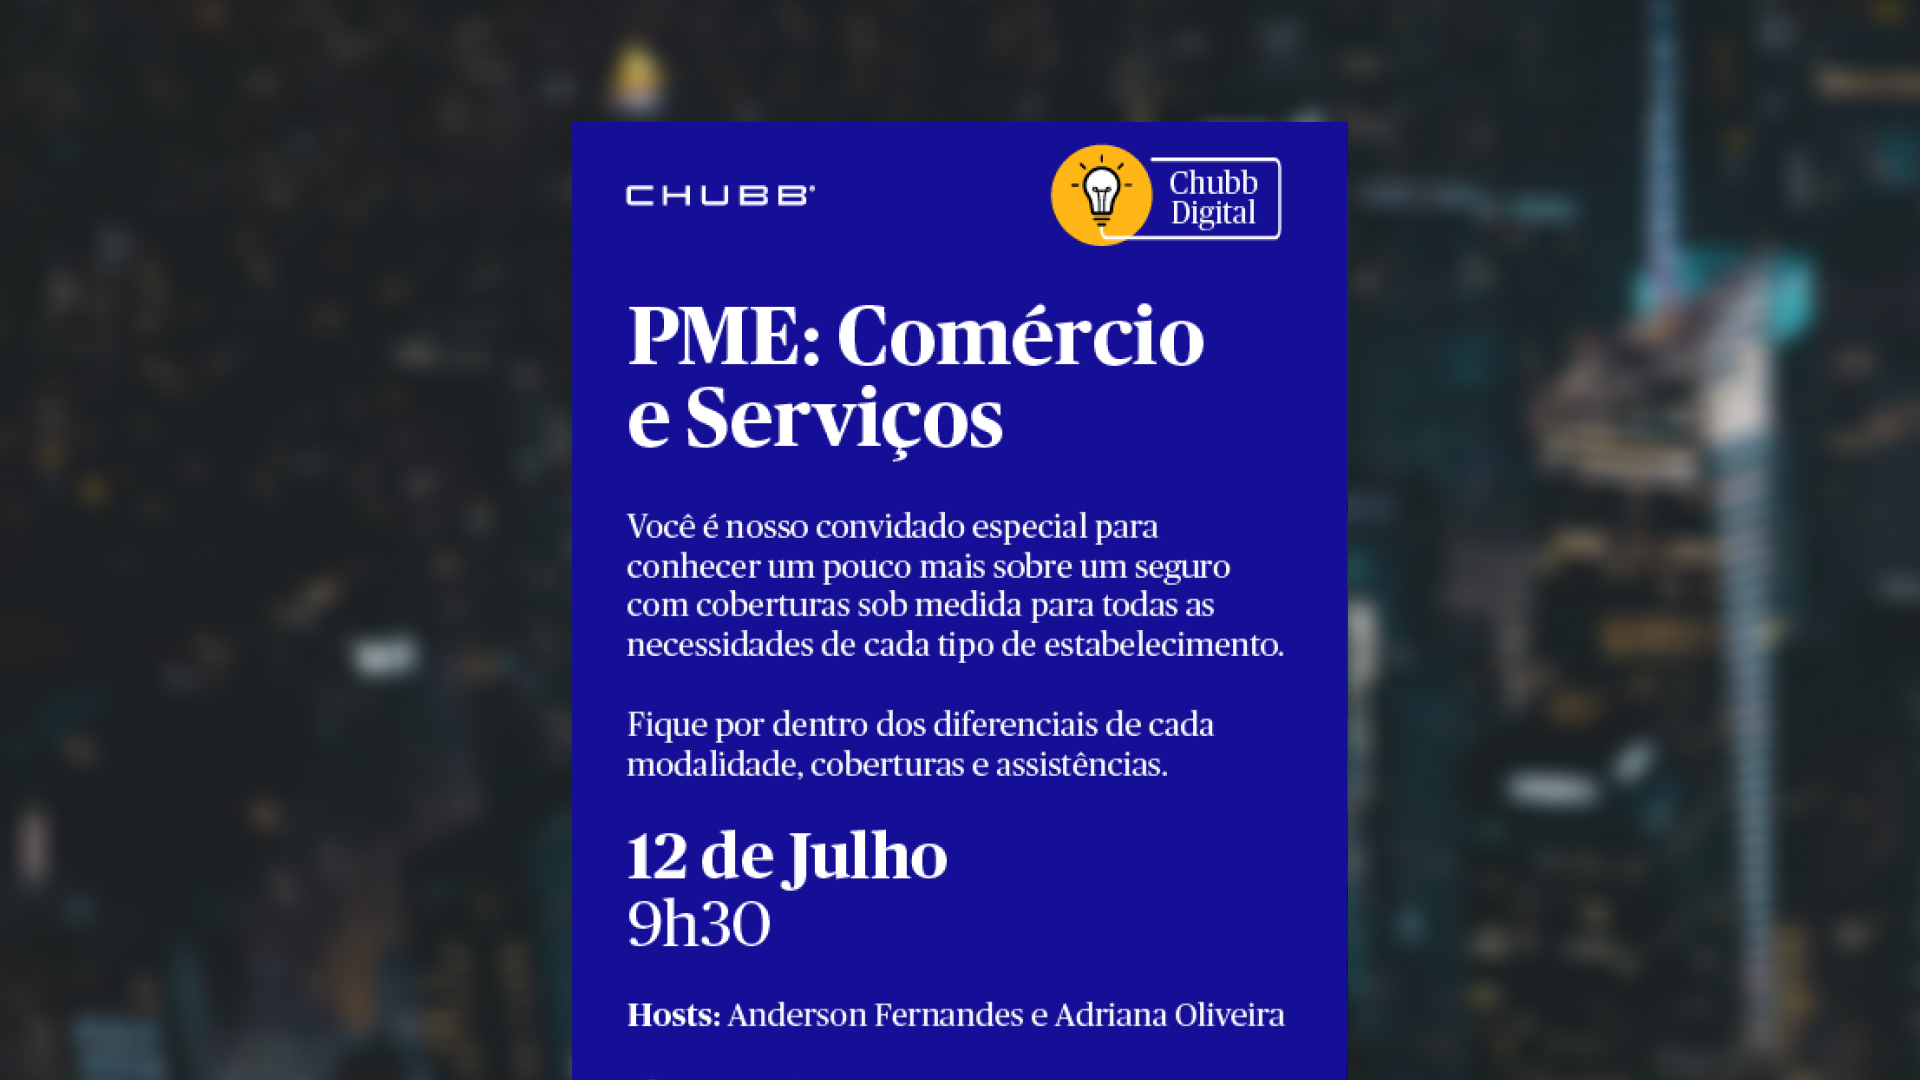 Chubb Digital apresenta soluções para PMEs em Comércio e Serviços / Divulgação